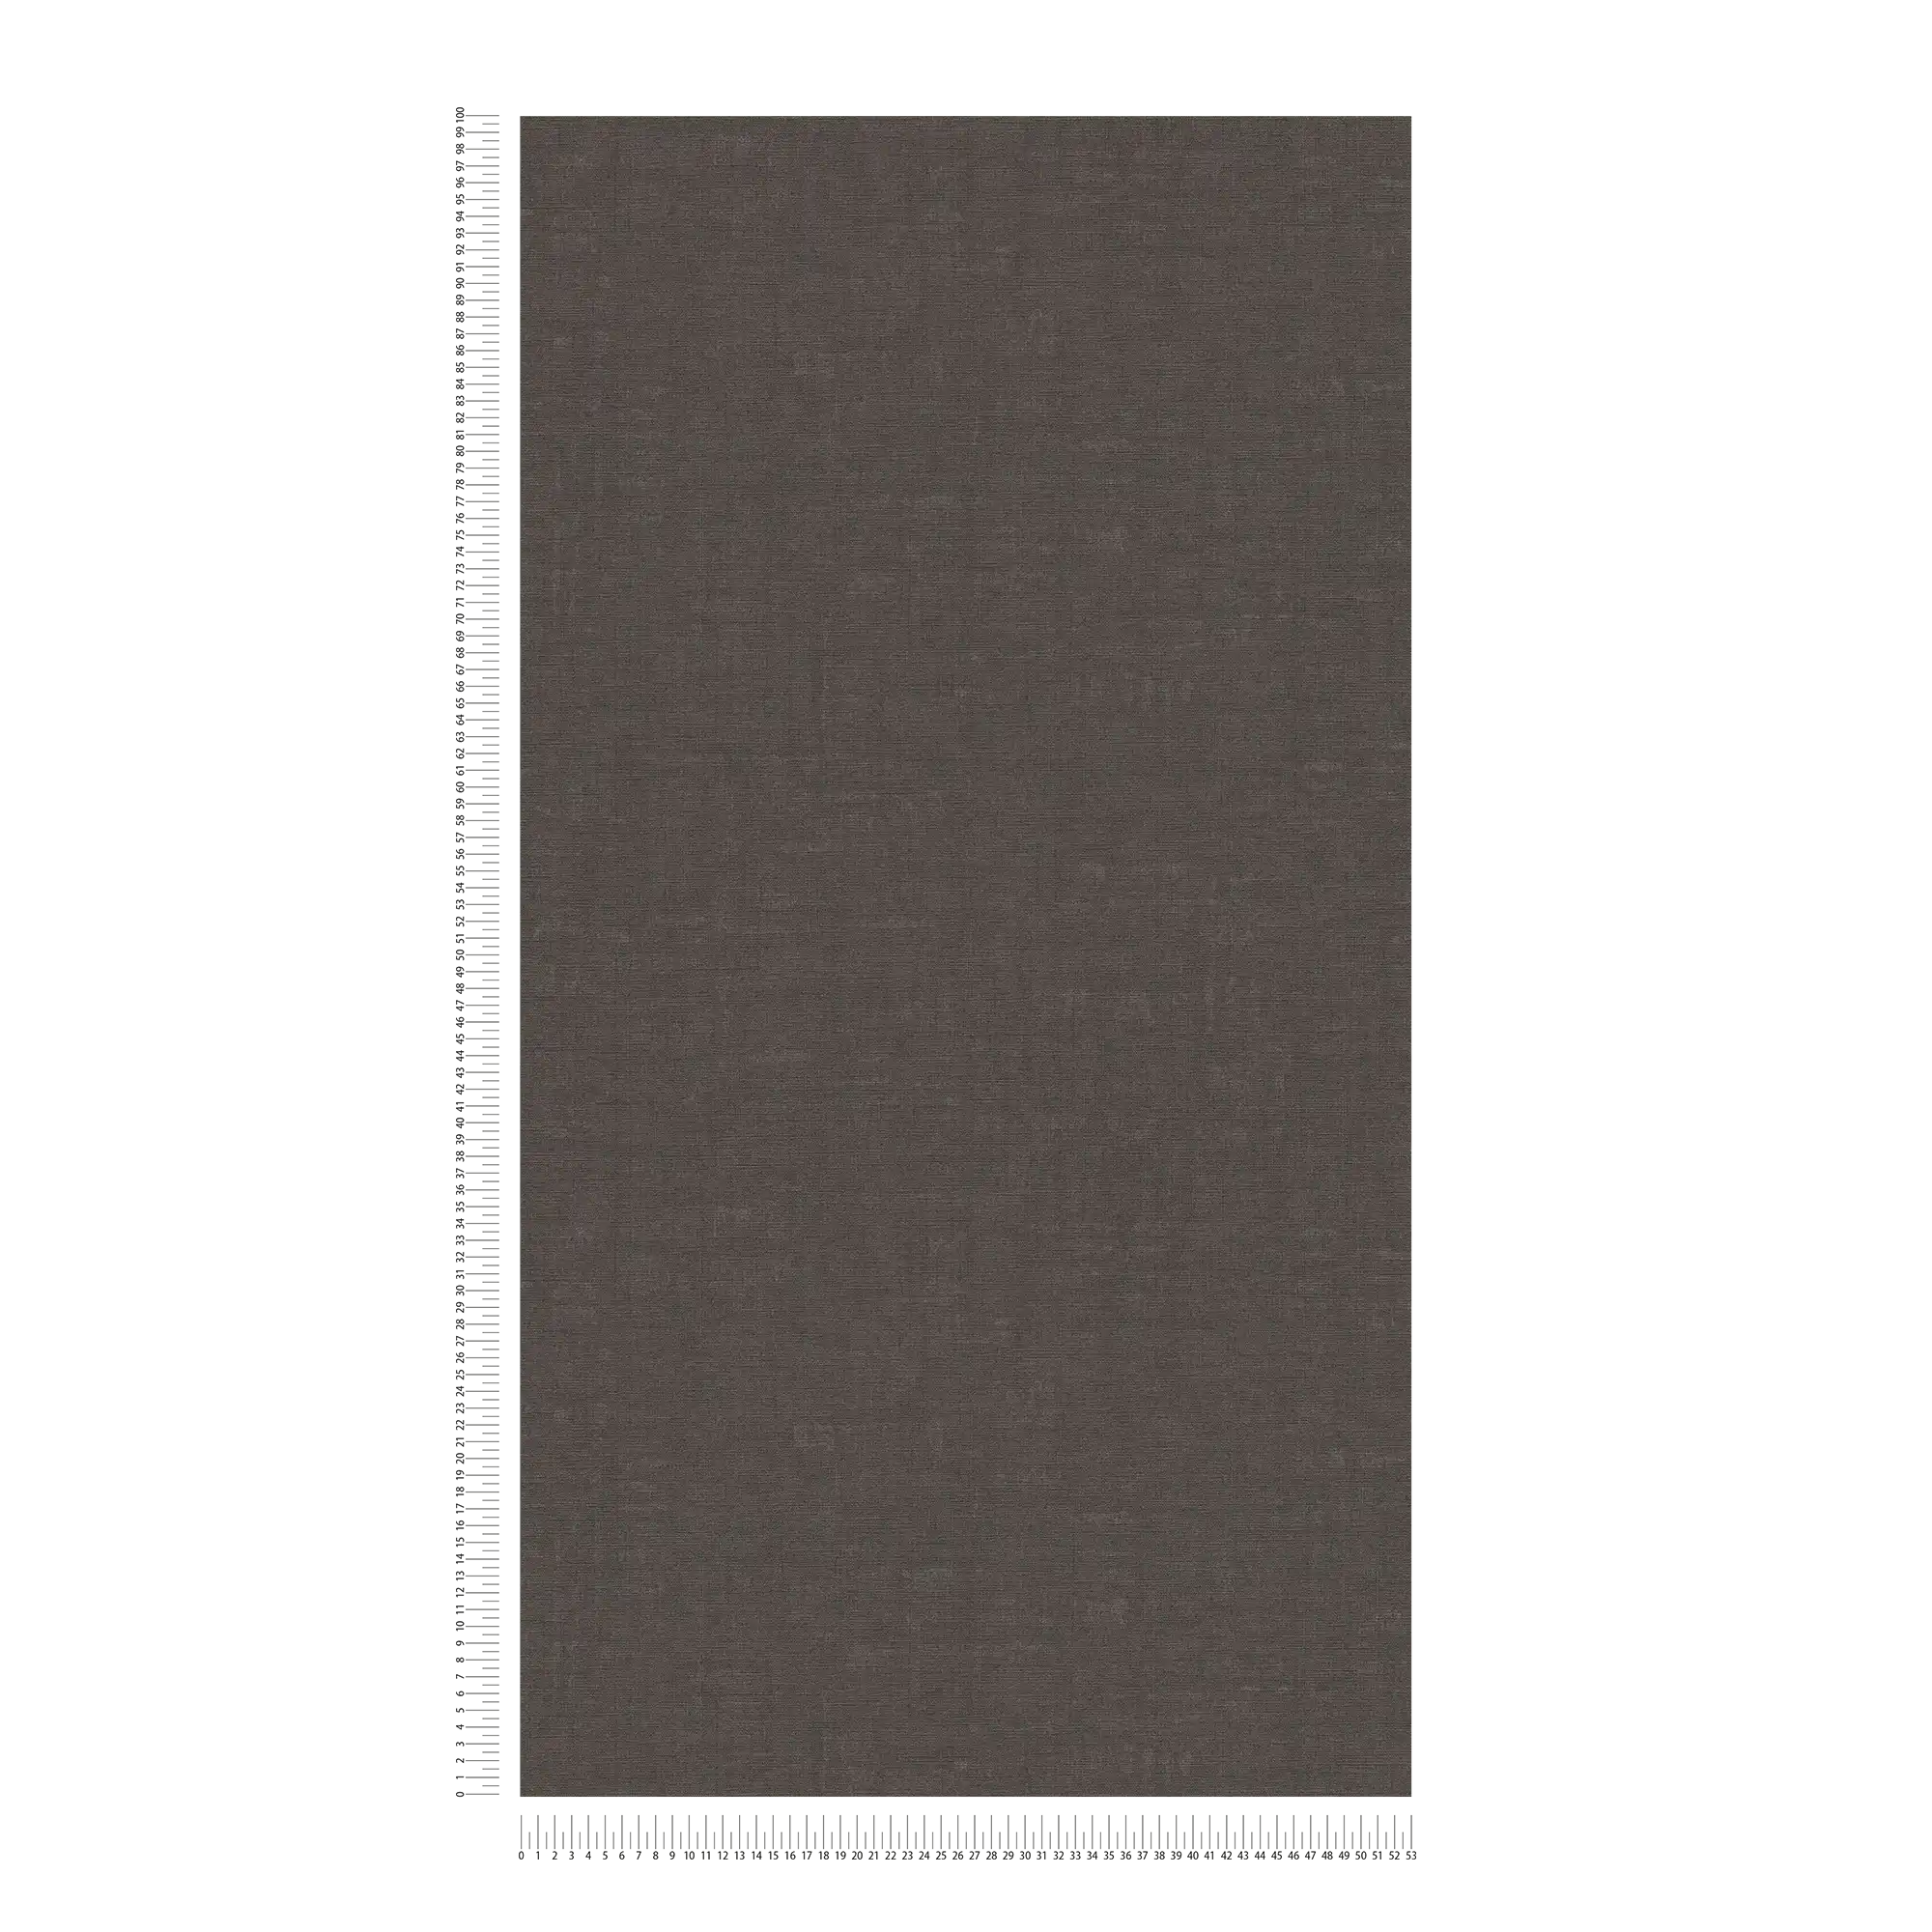             Melierte Tapete unifarben mit Strukturdesign – Grau, Schwarz
        